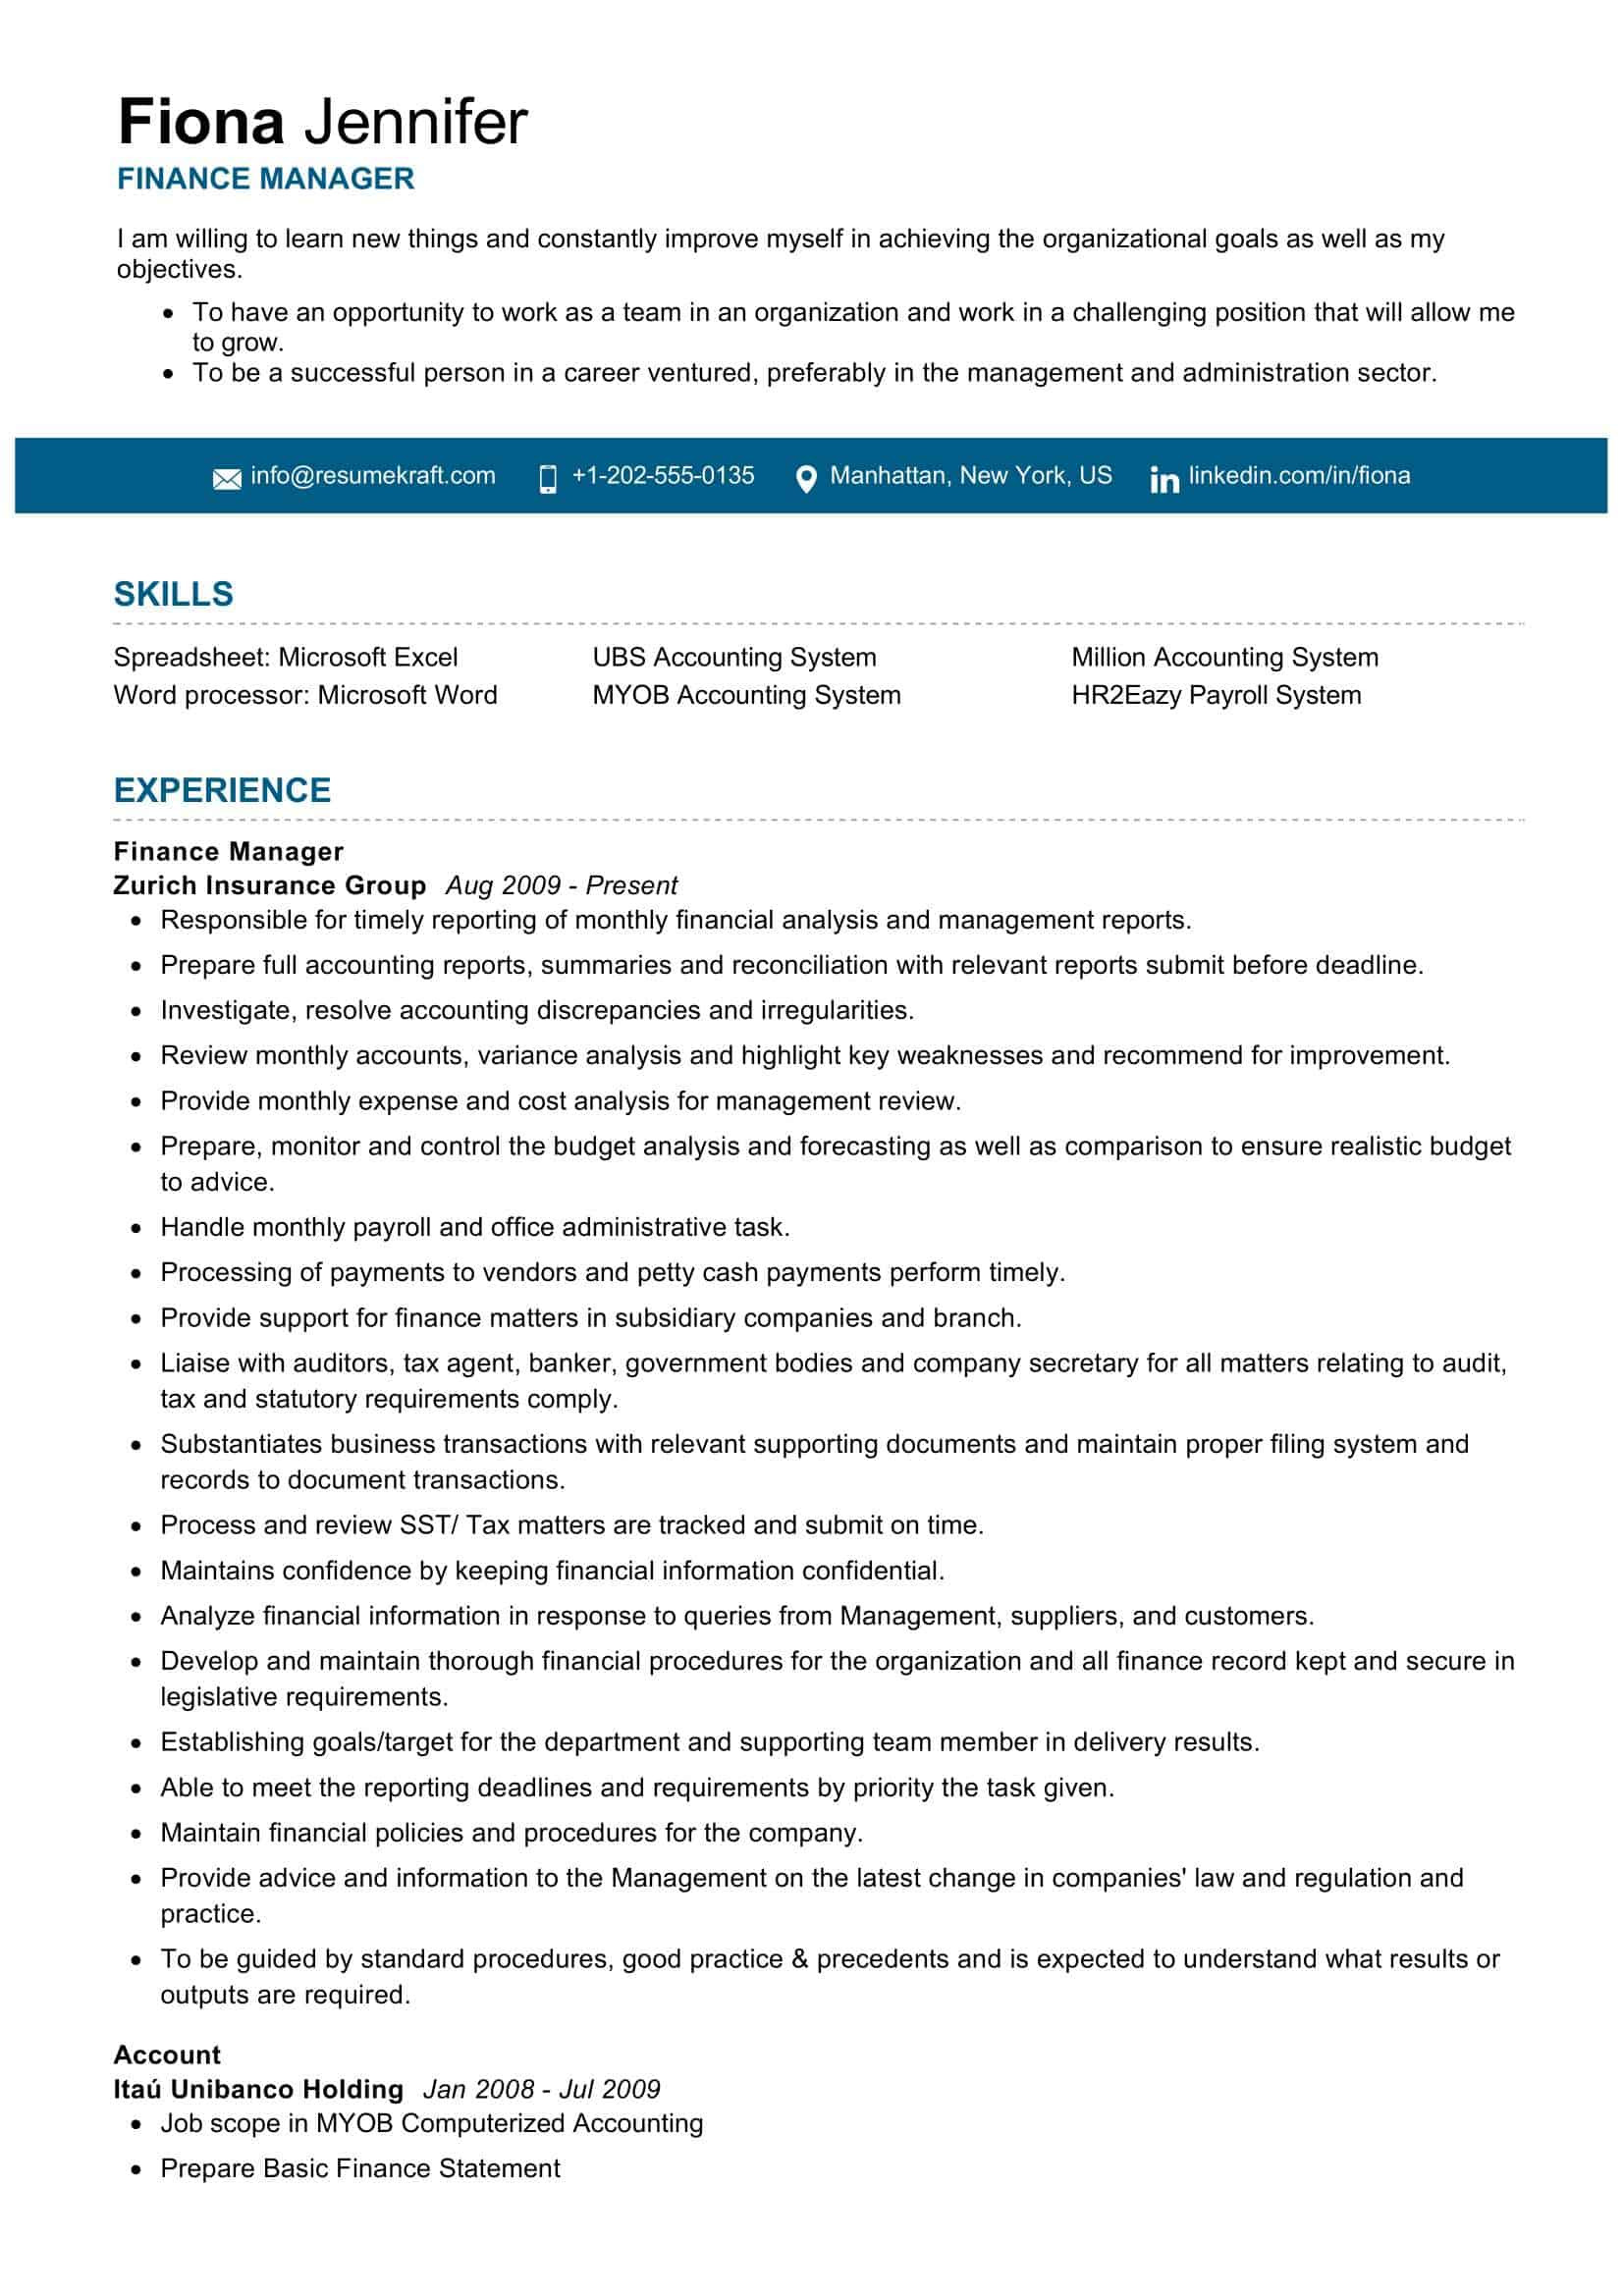 Sample Resume for Financial Management Position Finance Manager Resume Sample 2021